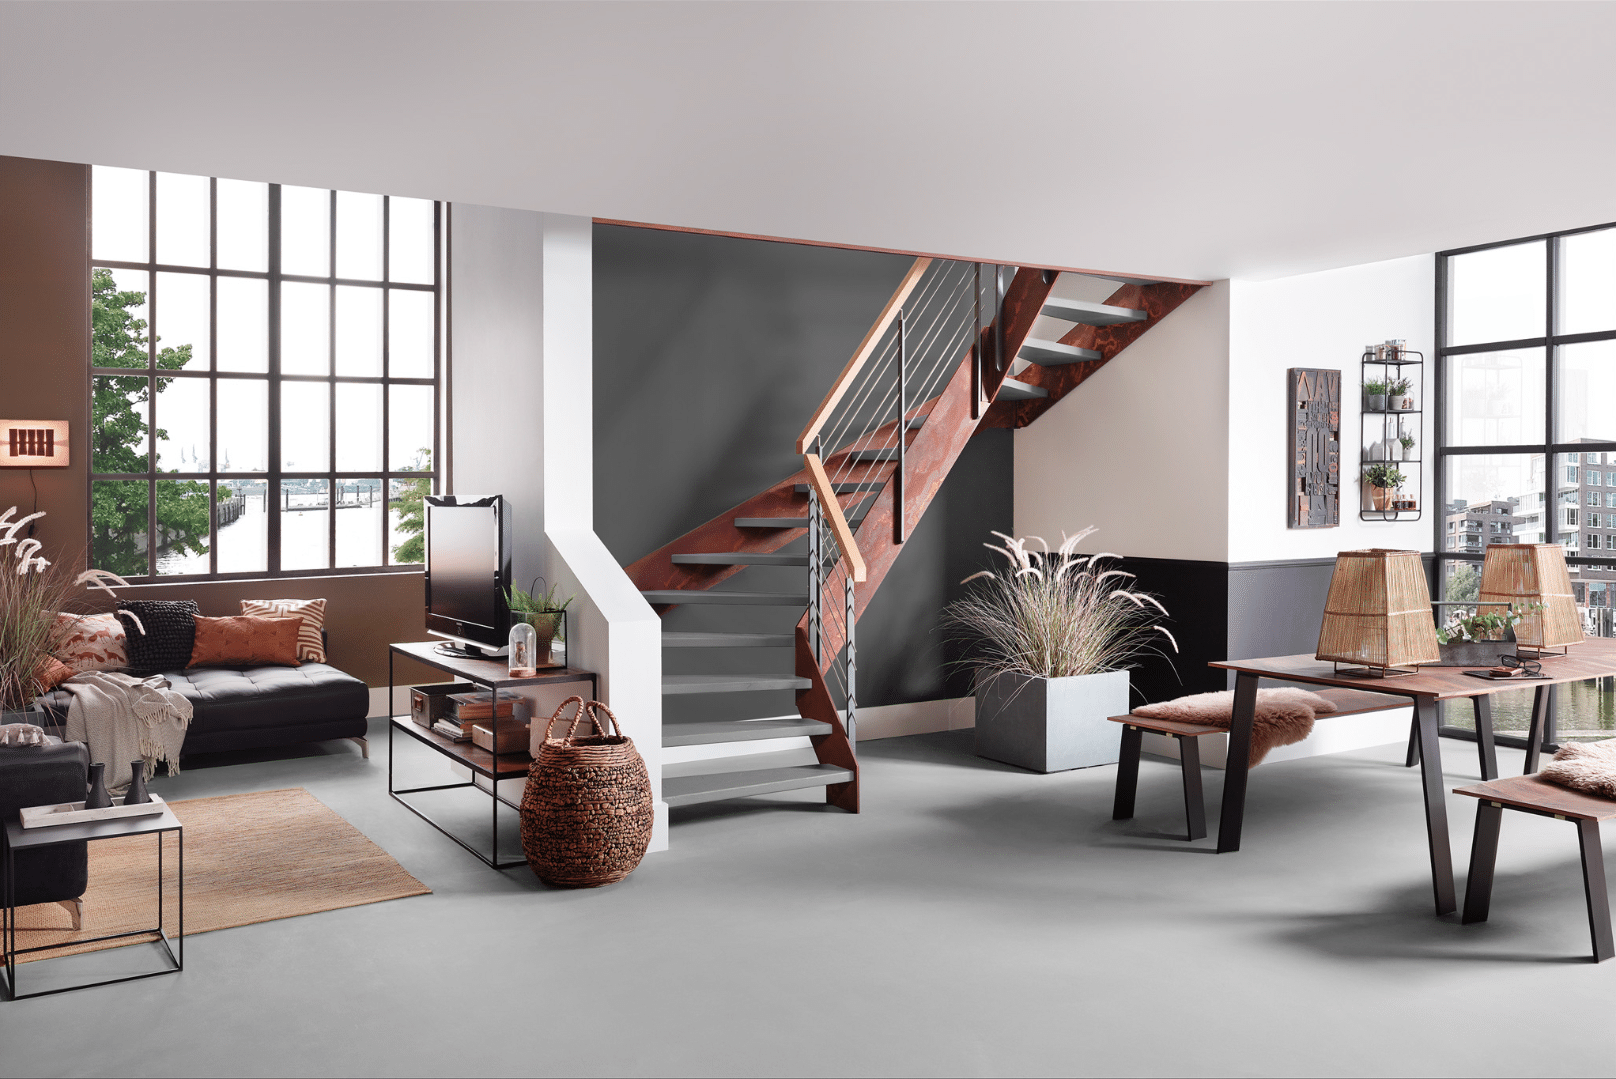 Wohnzimmer mit akzentreicher Treppe von Treppenmeister, bestehend aus grauen Stufen, einem Handlauf aus Holz und einem rostig anmutendem Gerüst, welches der Stiege ihren Industrial Look verleiht.